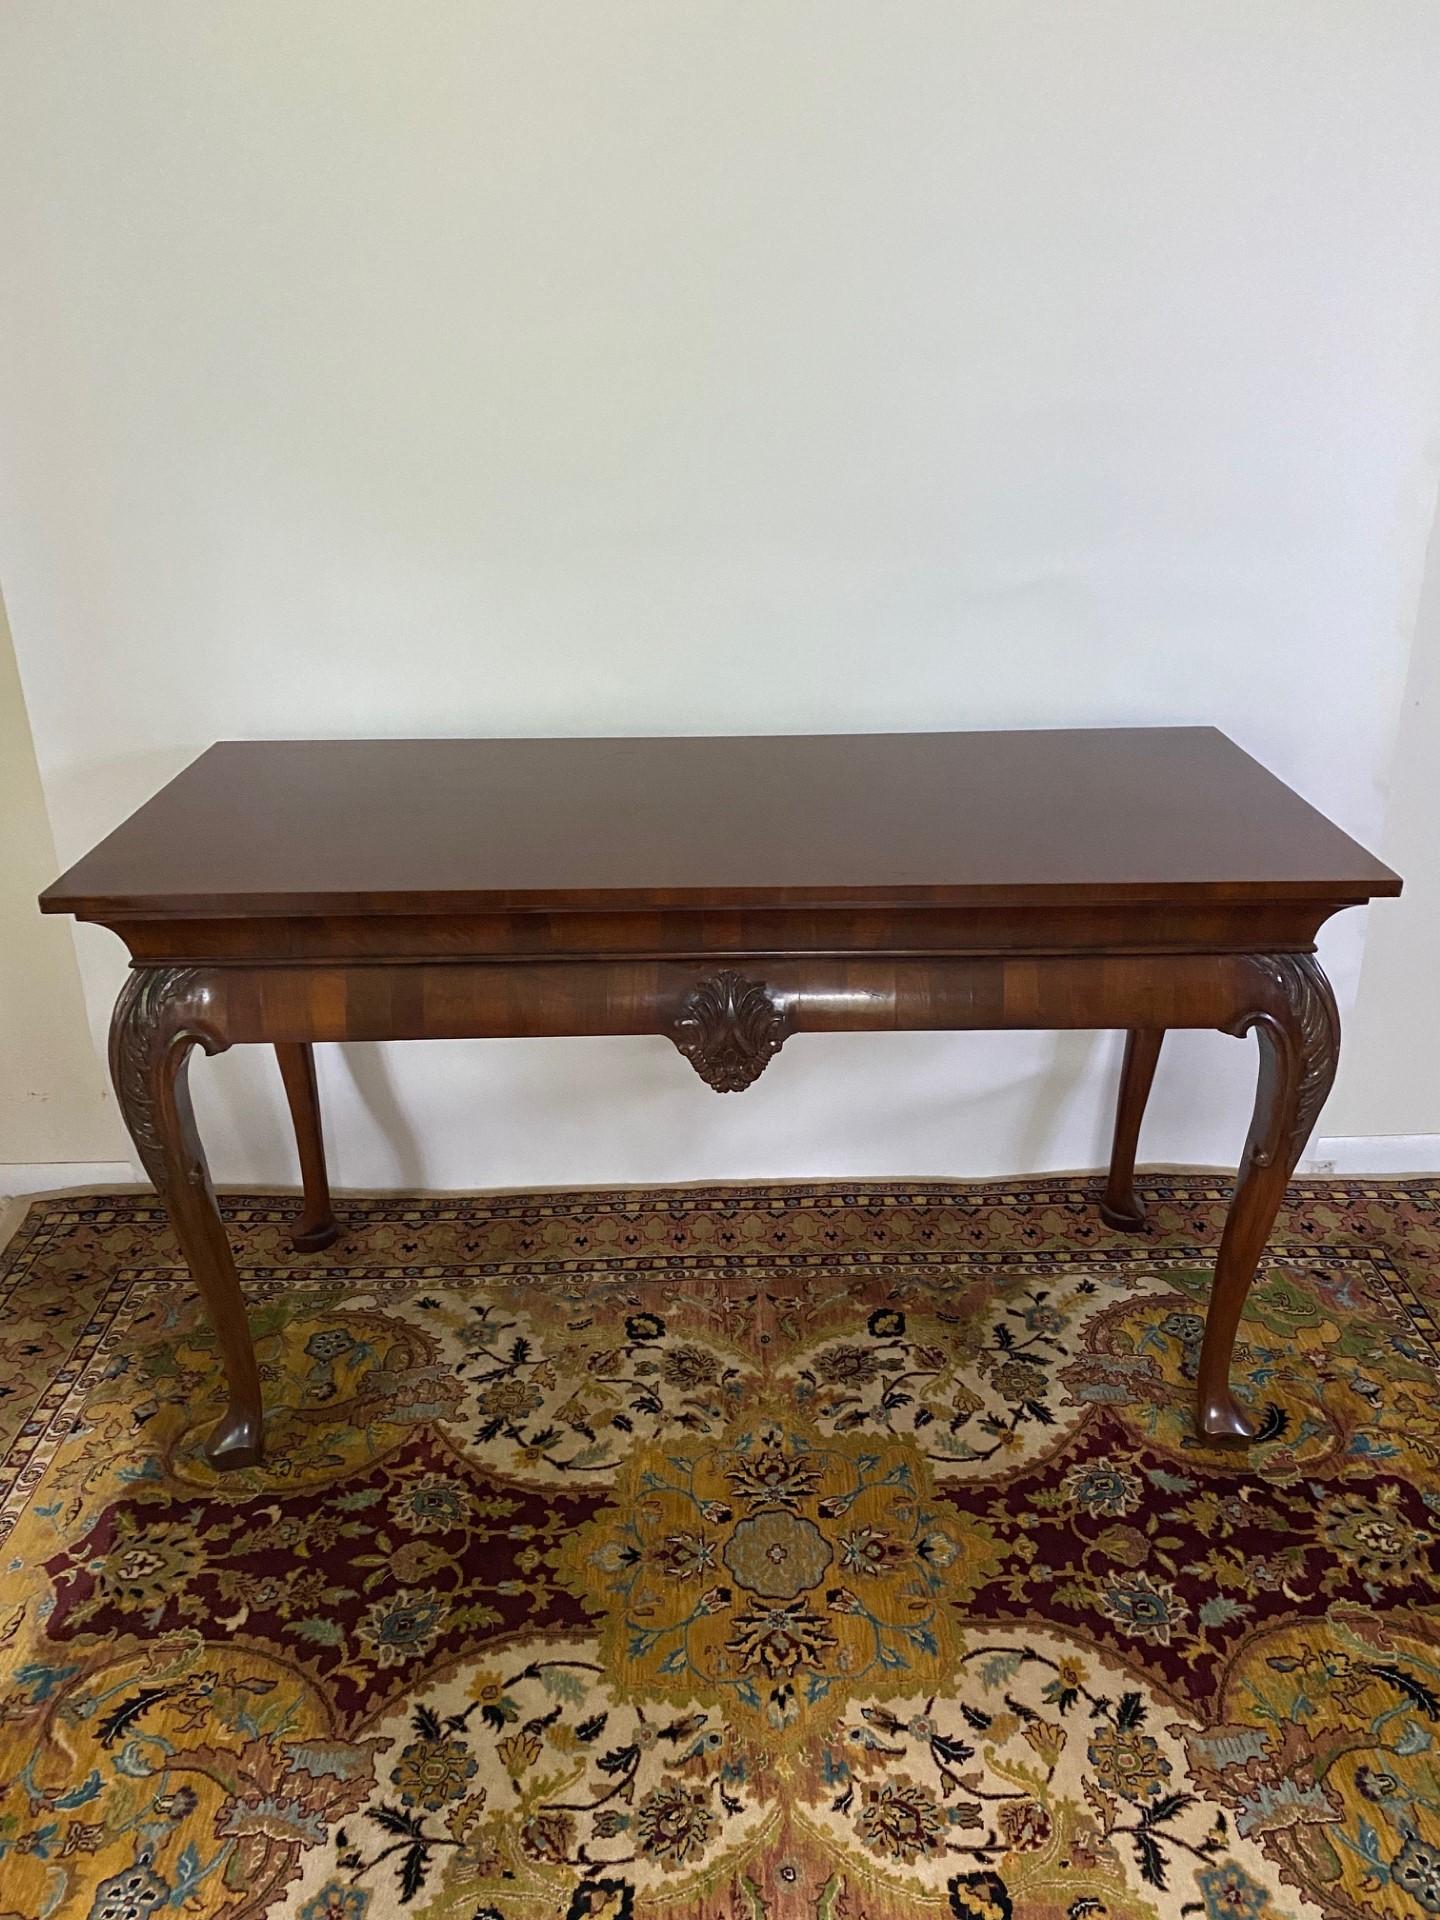 Cette table d'appoint en noyer de Wood & HOGAN, fabriquée sur banc anglais au début de l'ère géorgienne, est un meuble remarquable qui incarne l'élégance et le charme de l'ère géorgienne. Fabriquée avec une attention méticuleuse aux détails, cette